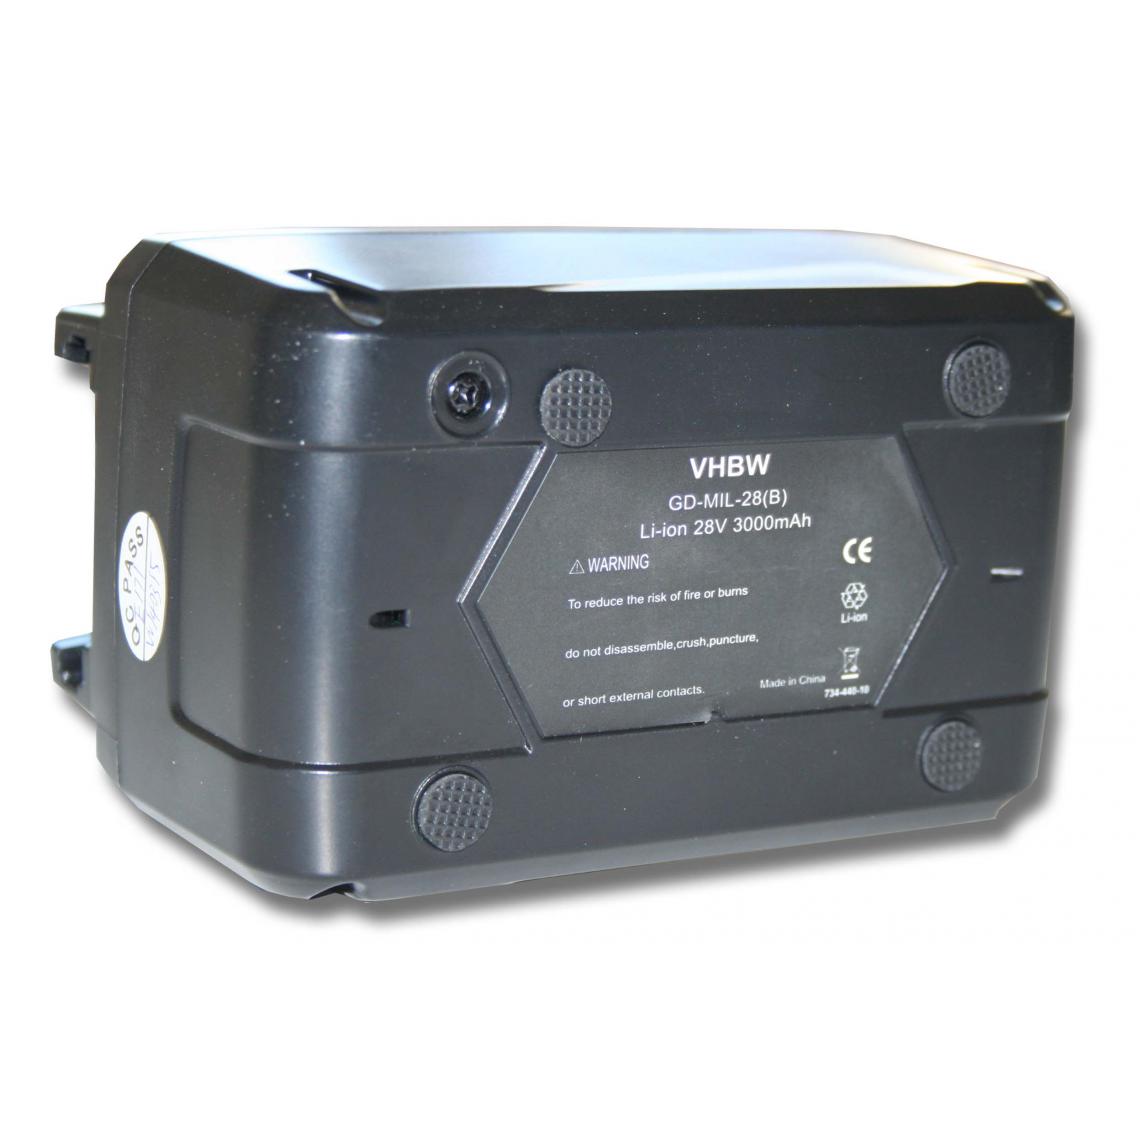 Vhbw - vhbw Batterie compatible avec Milwaukee HD28 JSB Stichsäge, HD28 MS Handkreissäge outil électrique (3000mAh Li-ion 28 V) - Accessoires vissage, perçage